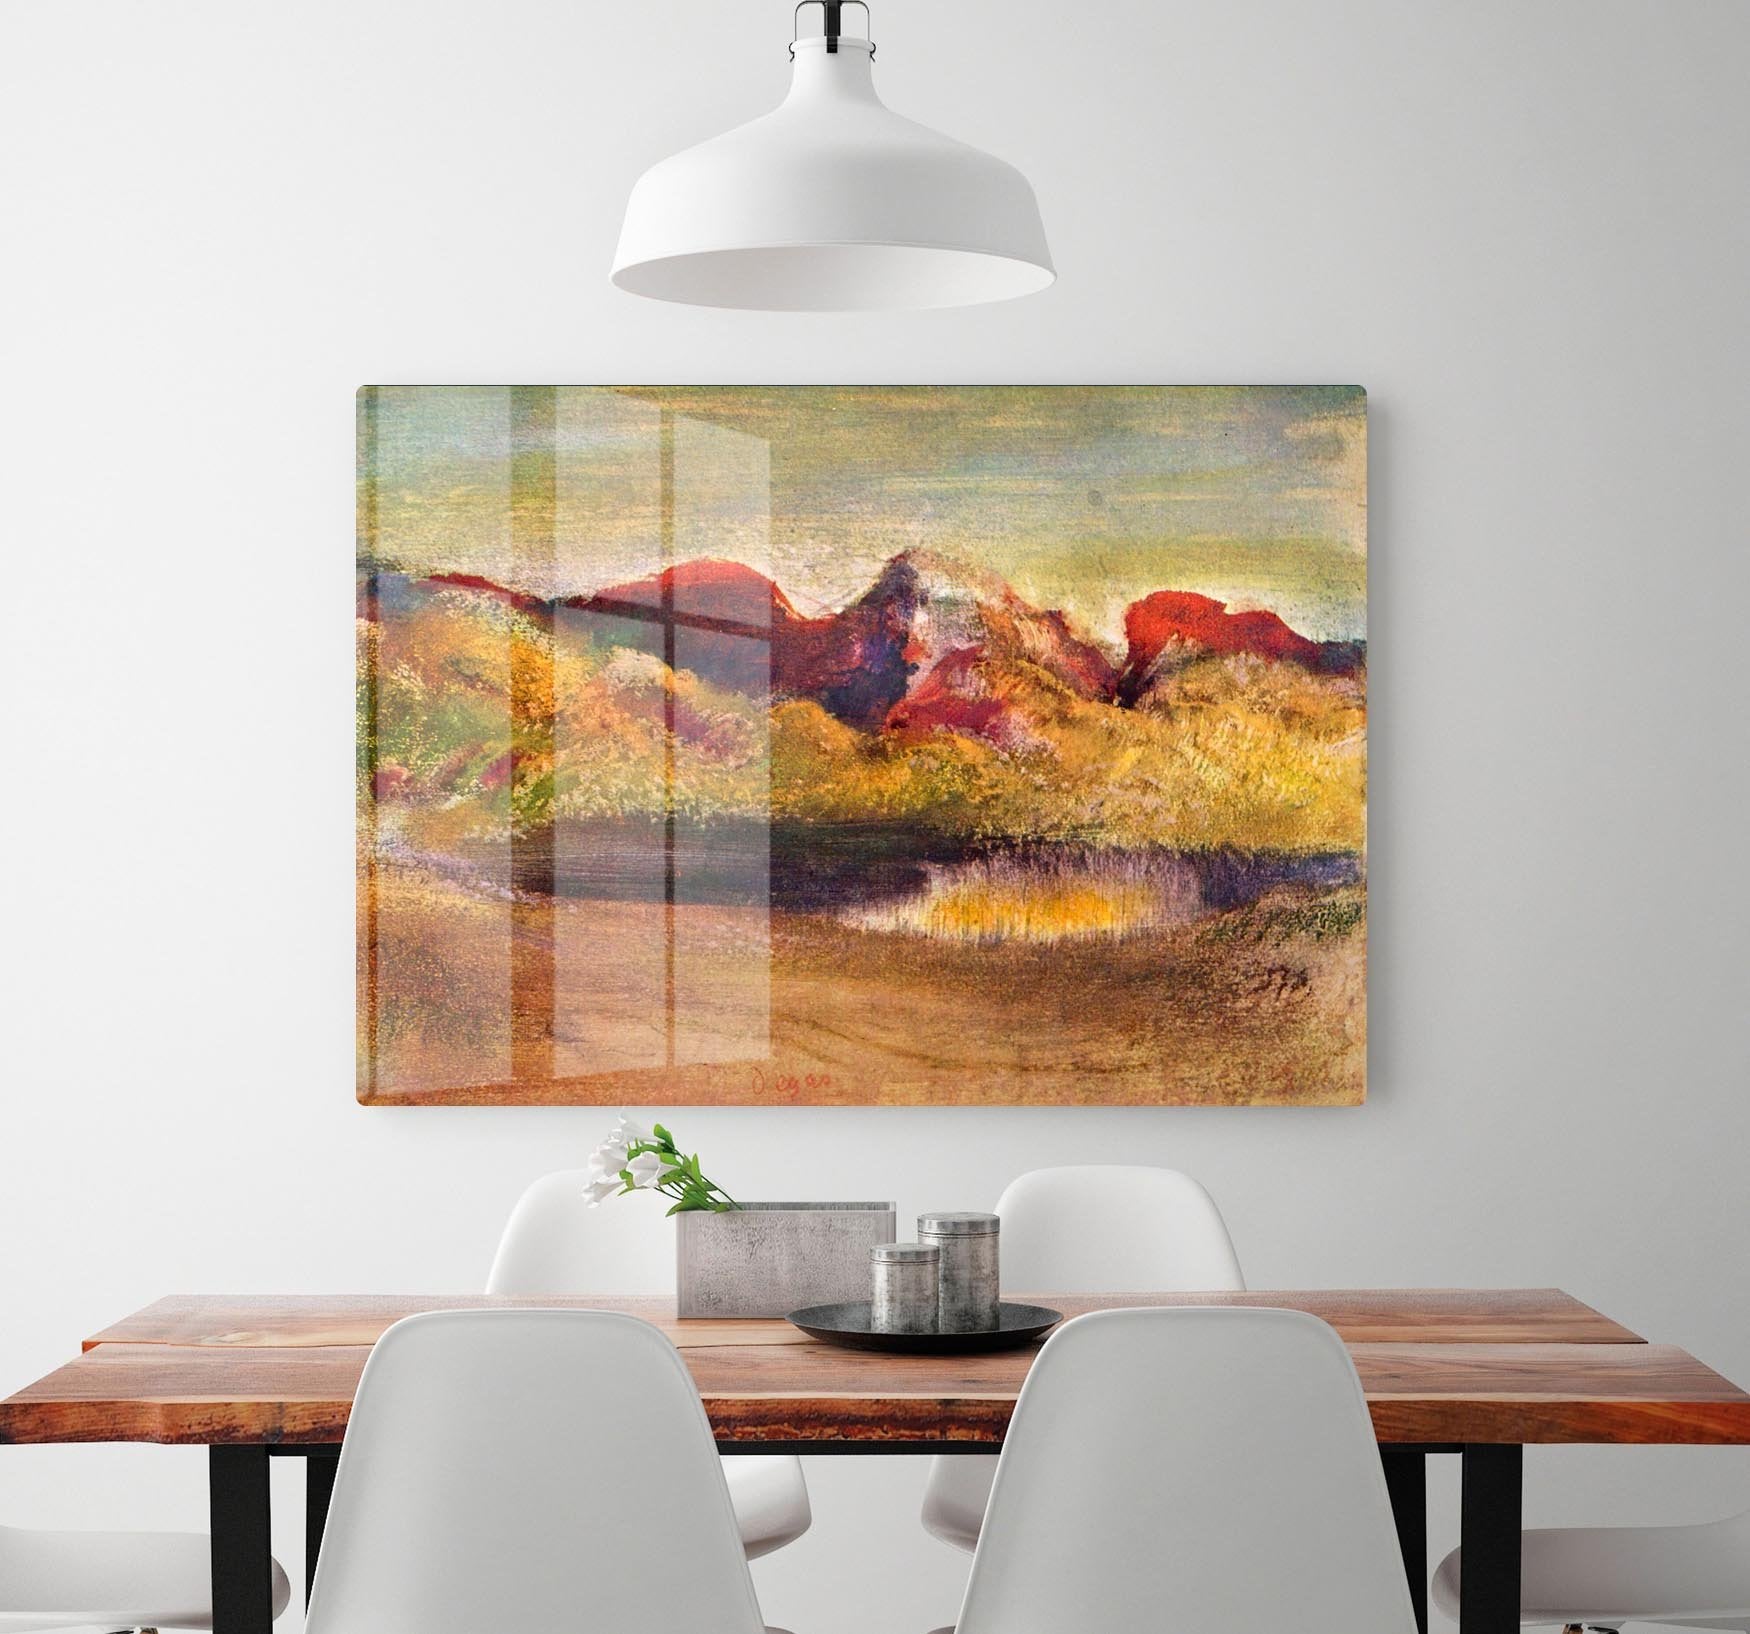 Lake and mountains by Degas HD Metal Print - Canvas Art Rocks - 2